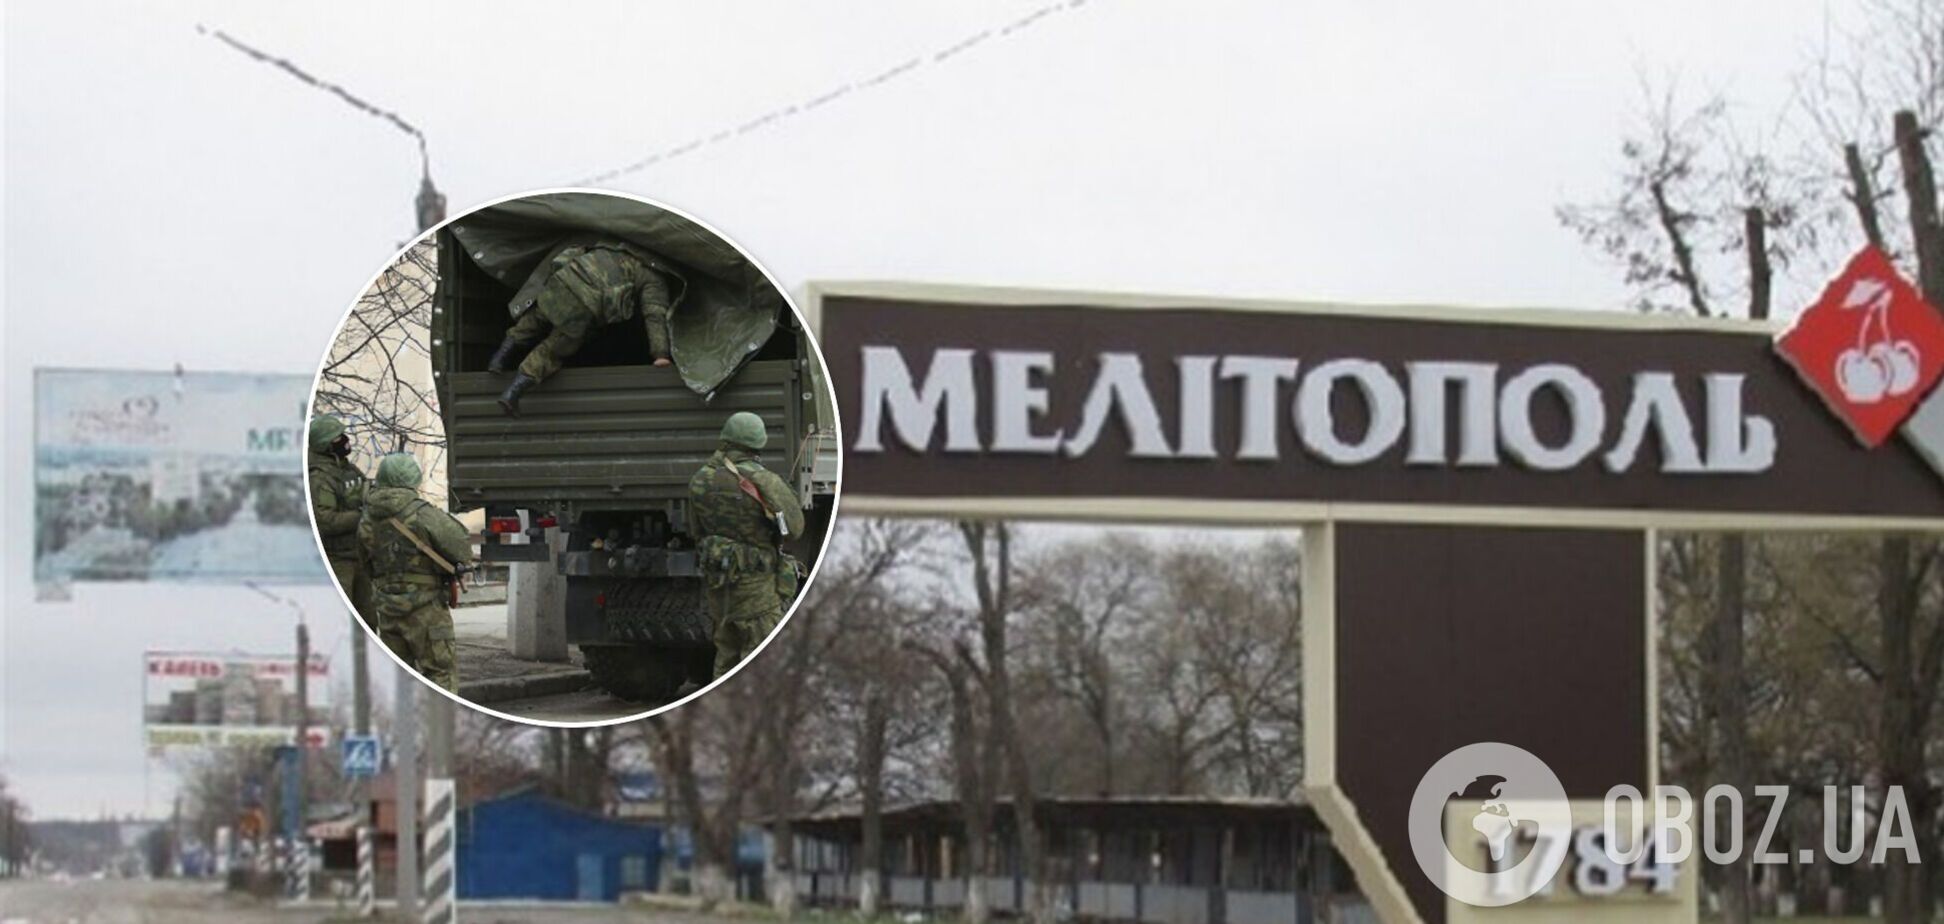 Містяни несли український прапор: у Мелітополі окупанти влаштували стрільбу по натовпу, є поранені. Відео